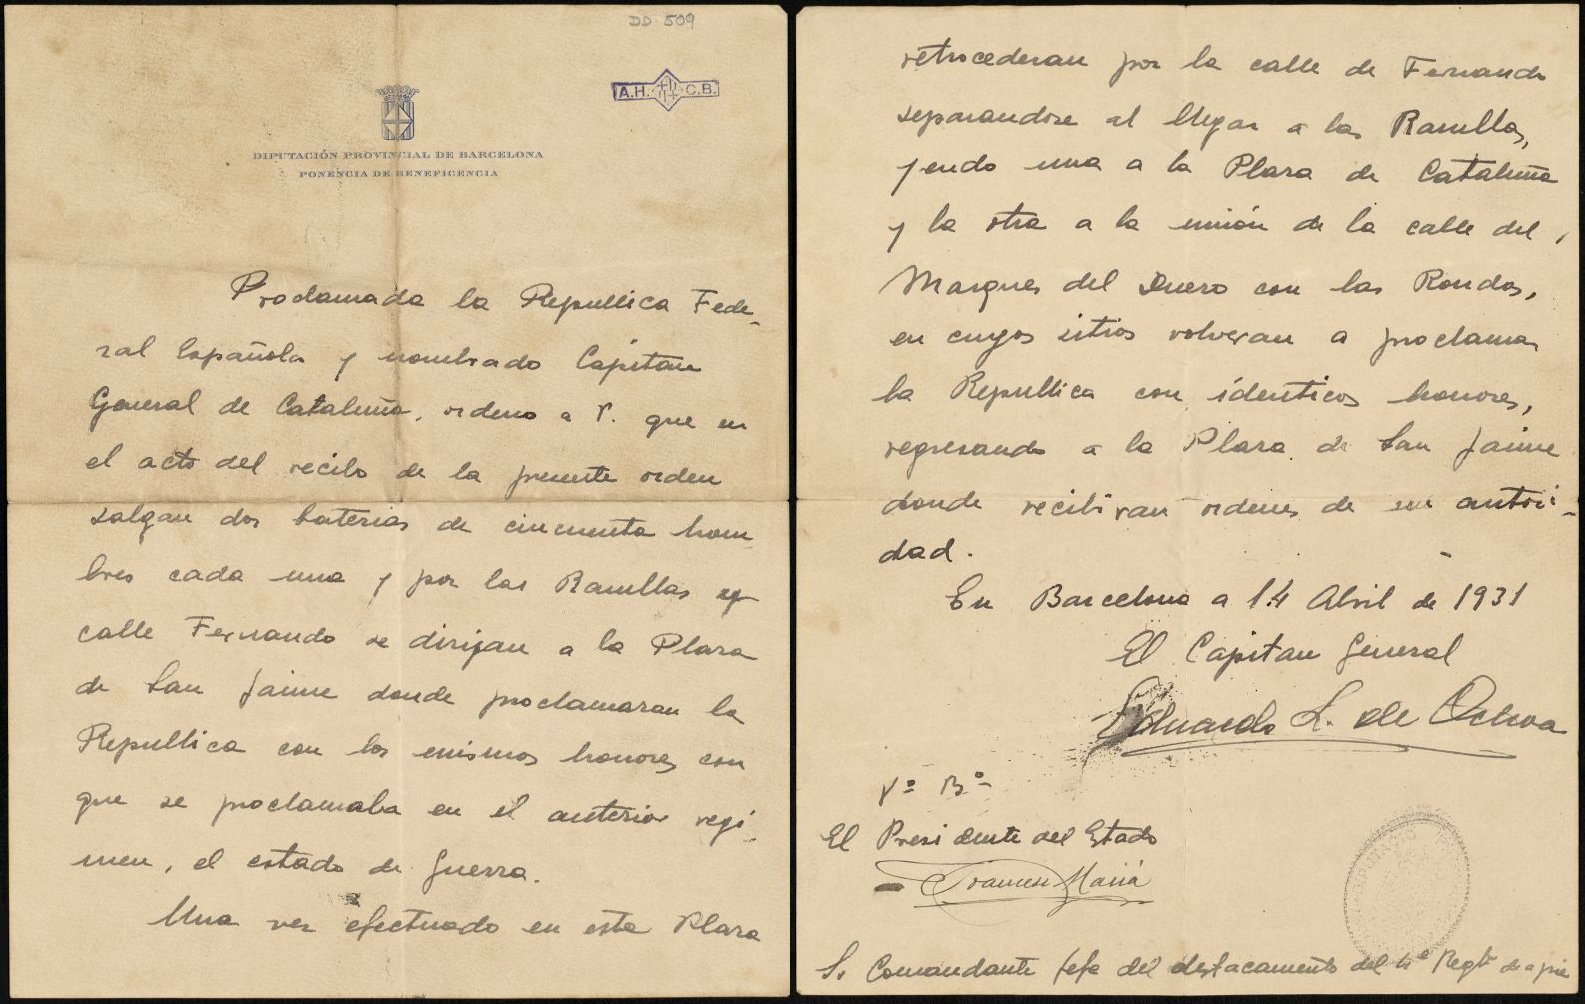 Document autògraf del General López Ochoa en el que, un cop nomenat Capità General de Catalunya, ordena que dues bateries amb un total de cent homes, es dirigeixin a la Plaça de Sant Jaume